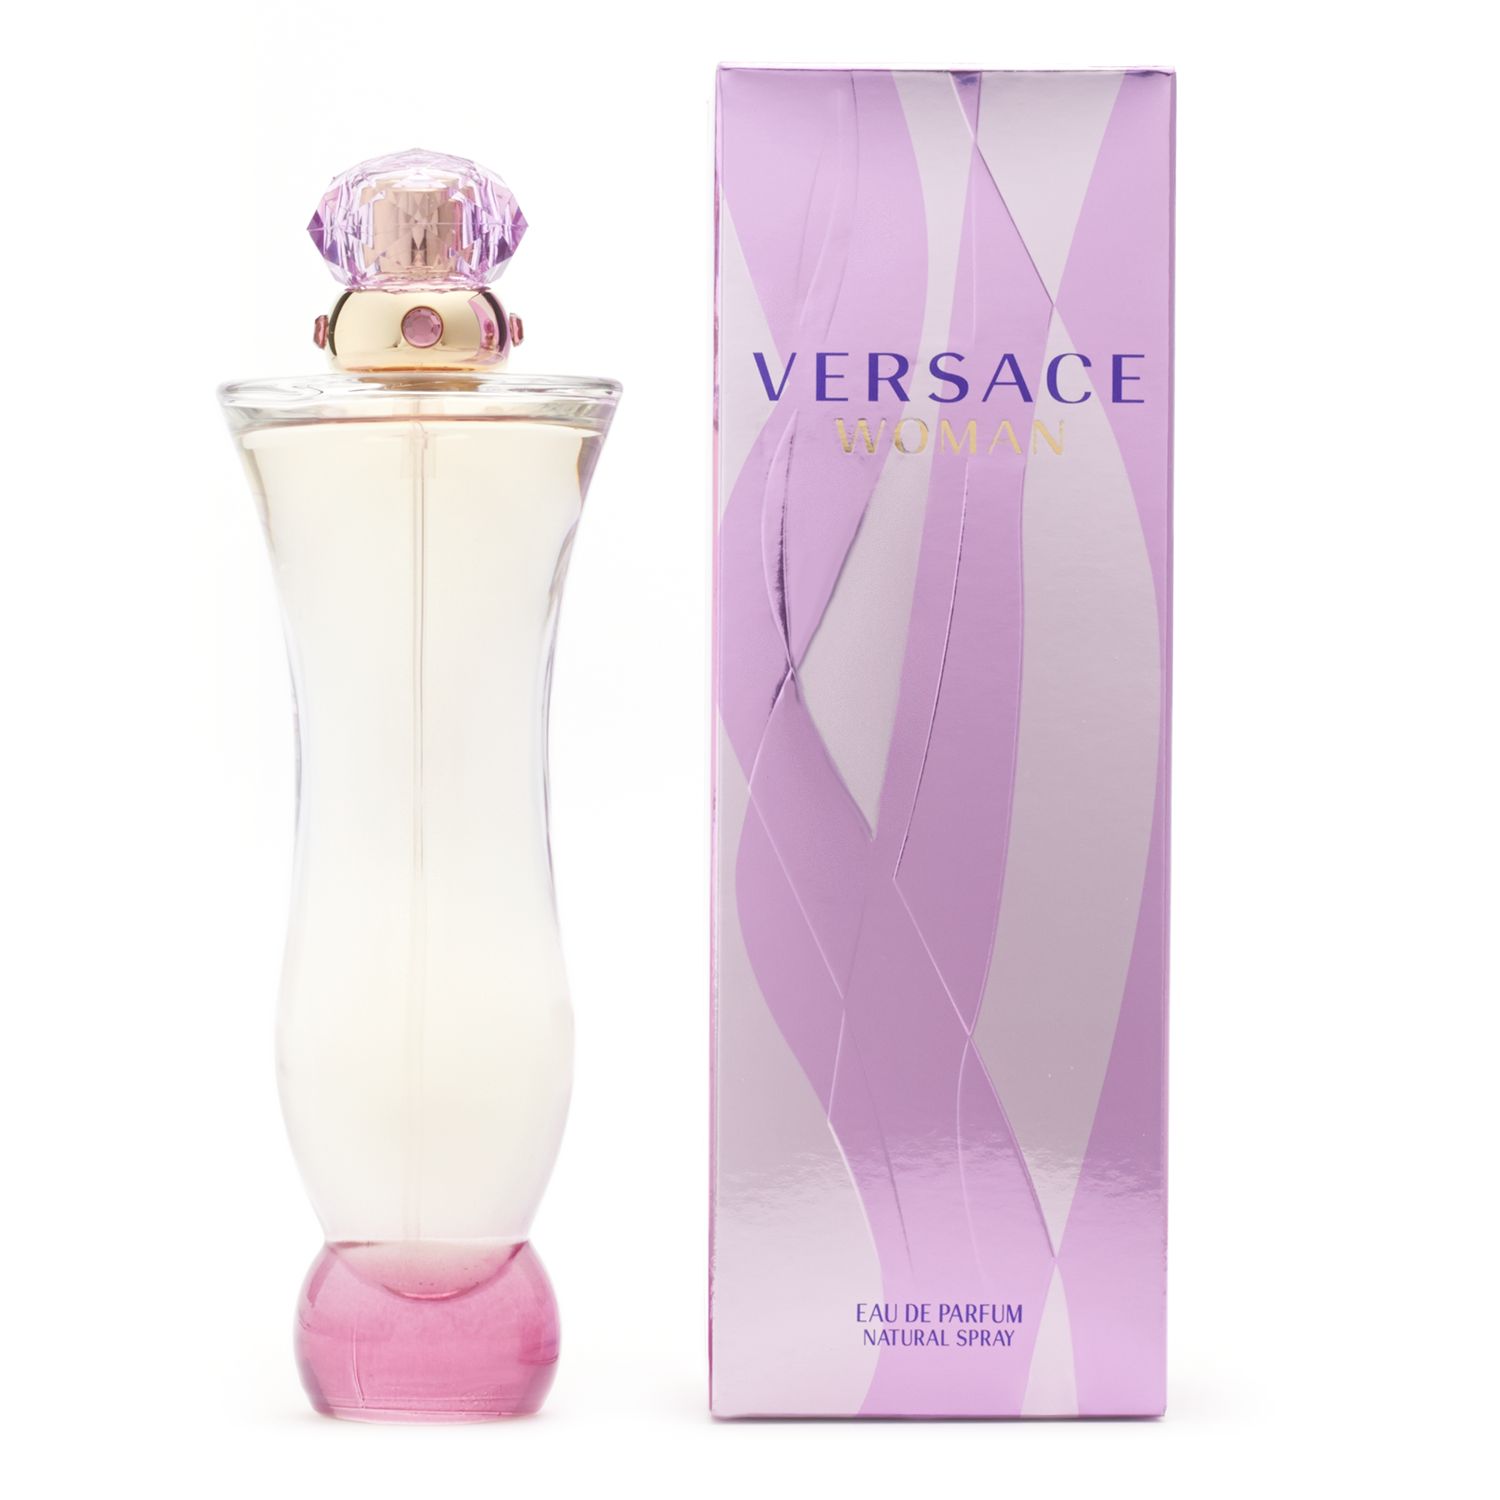 Versace Woman Women's Perfume - Eau de 